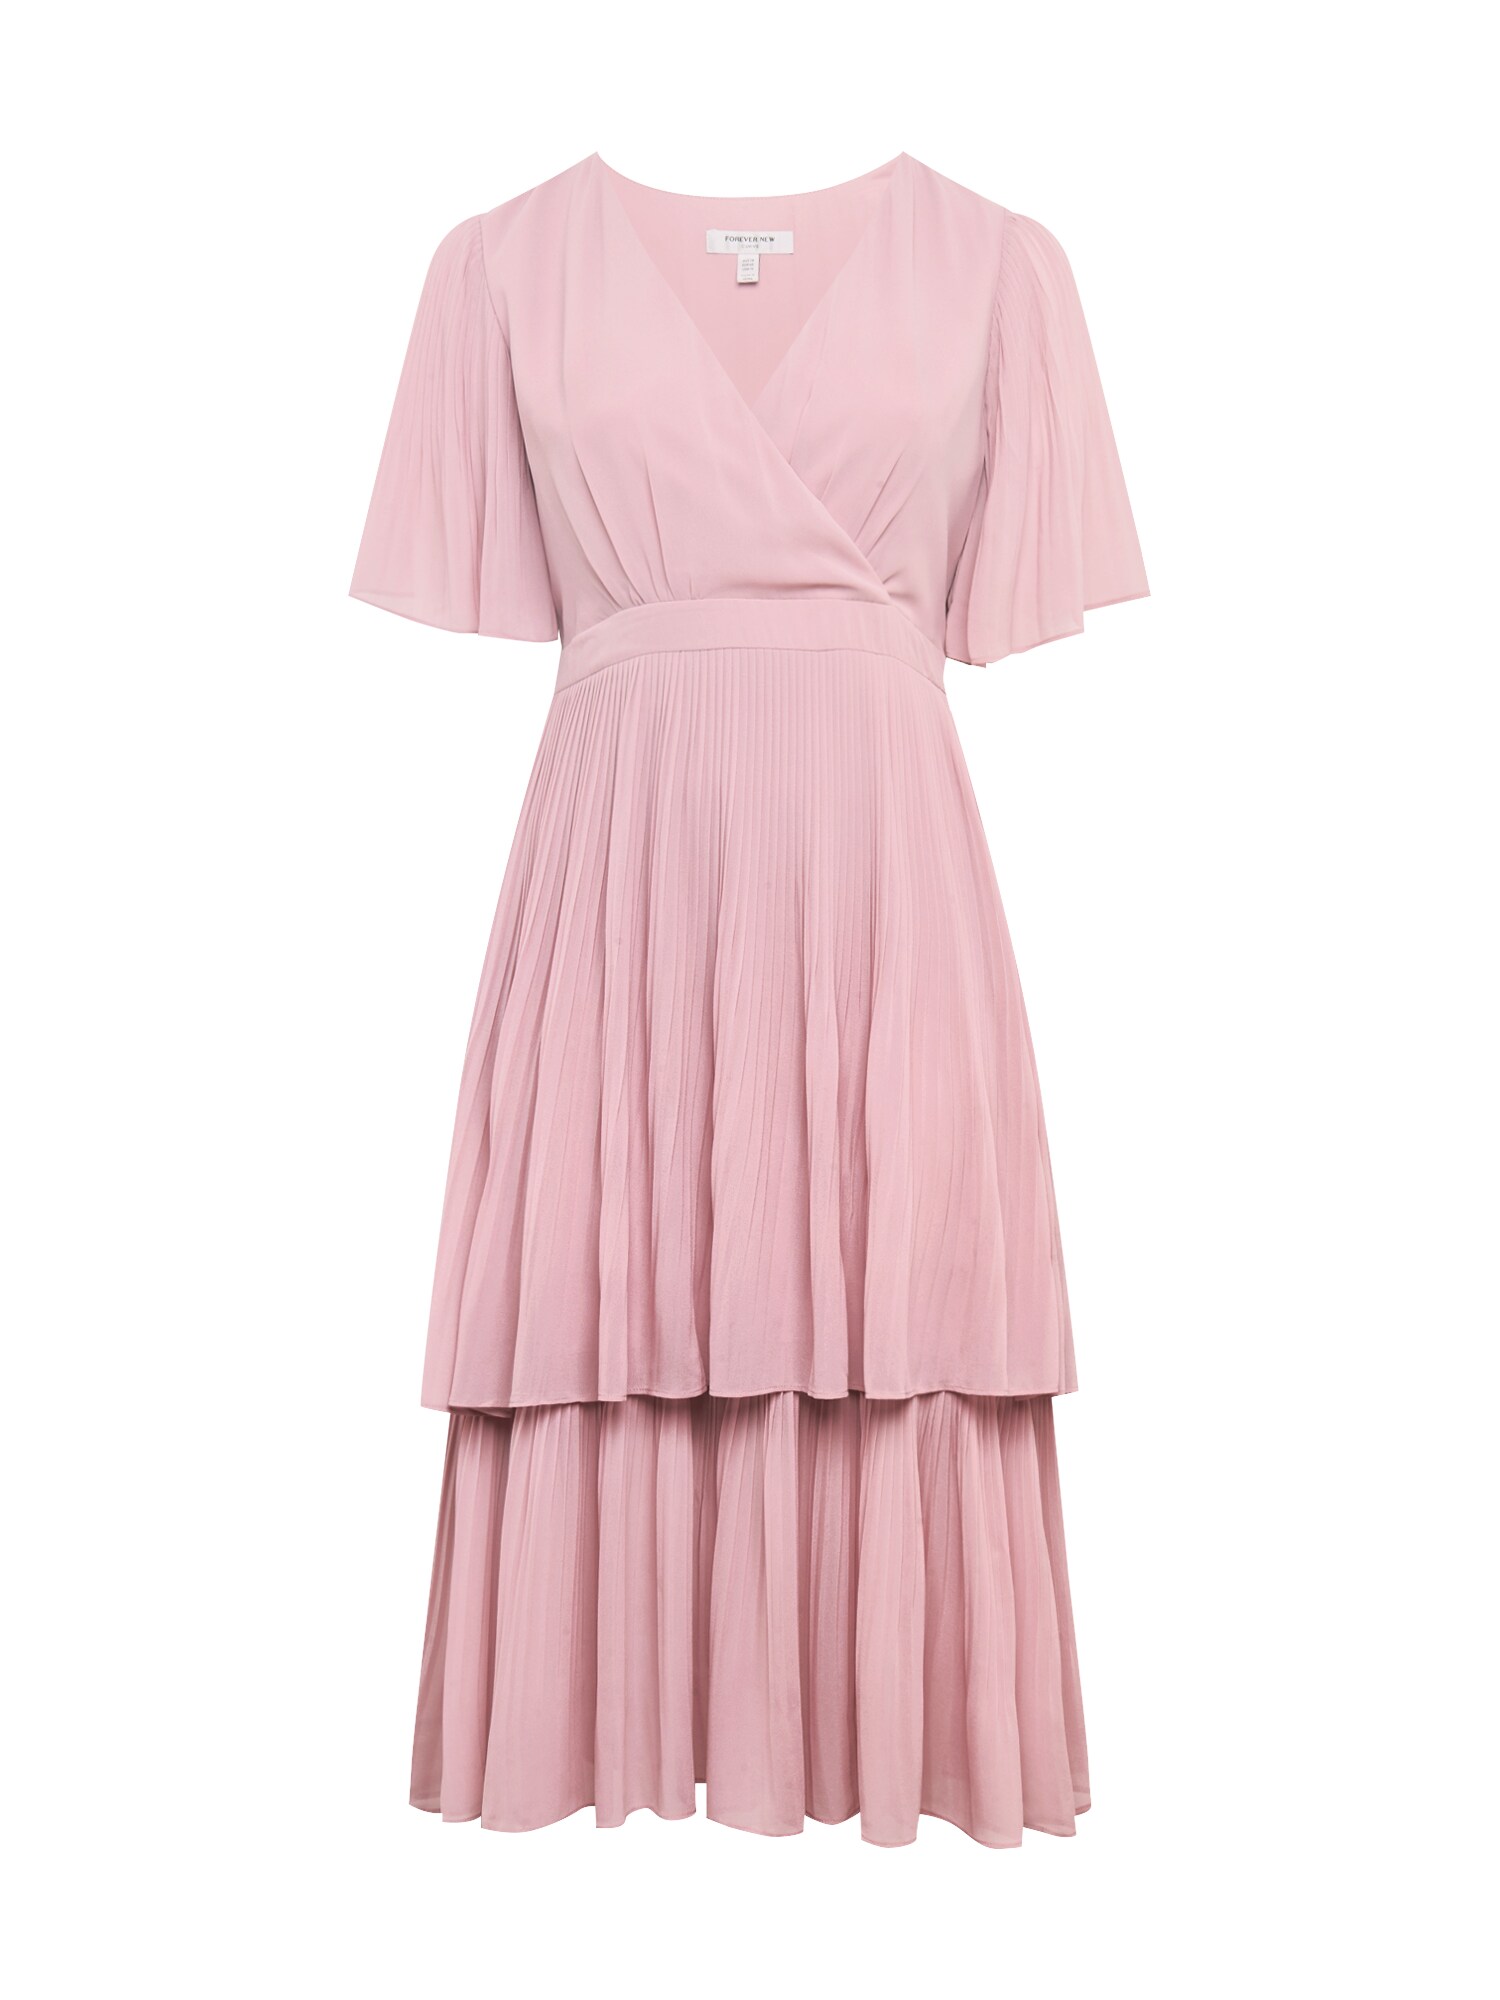 Forever New Suknelė  ryškiai rožinė spalva